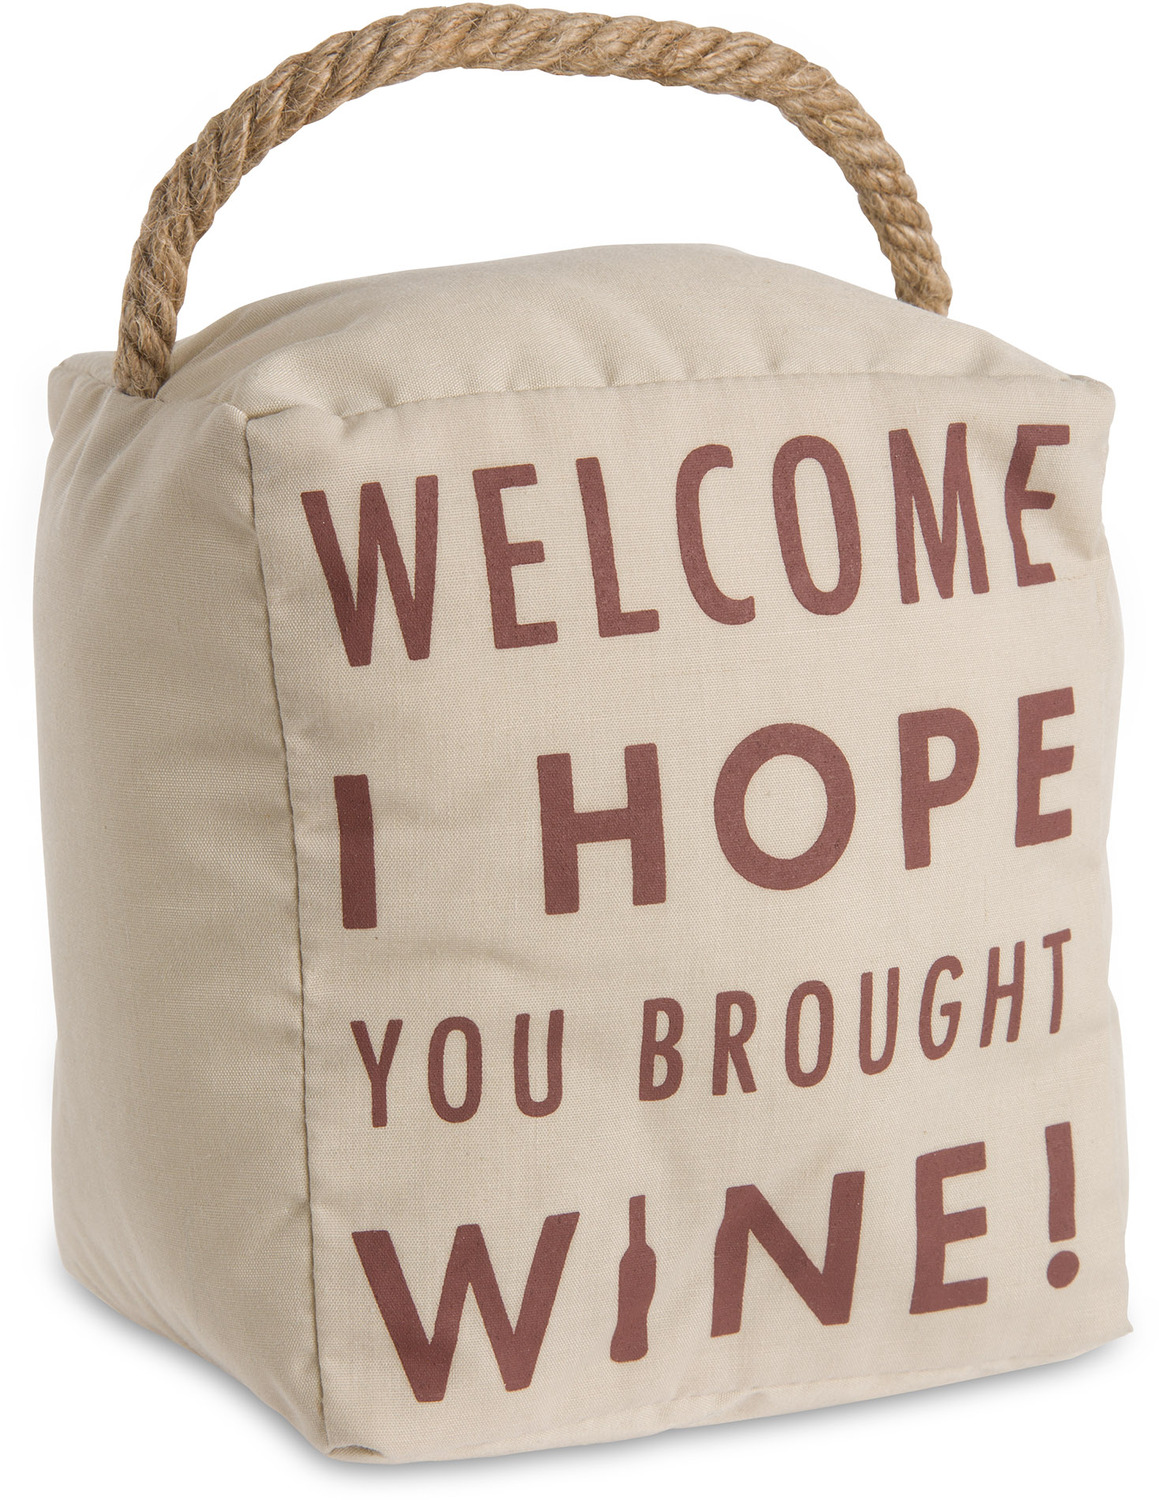 Hope You Brought Wine by Open Door Decor - Hope You Brought Wine - 5" x 6" Door Stopper